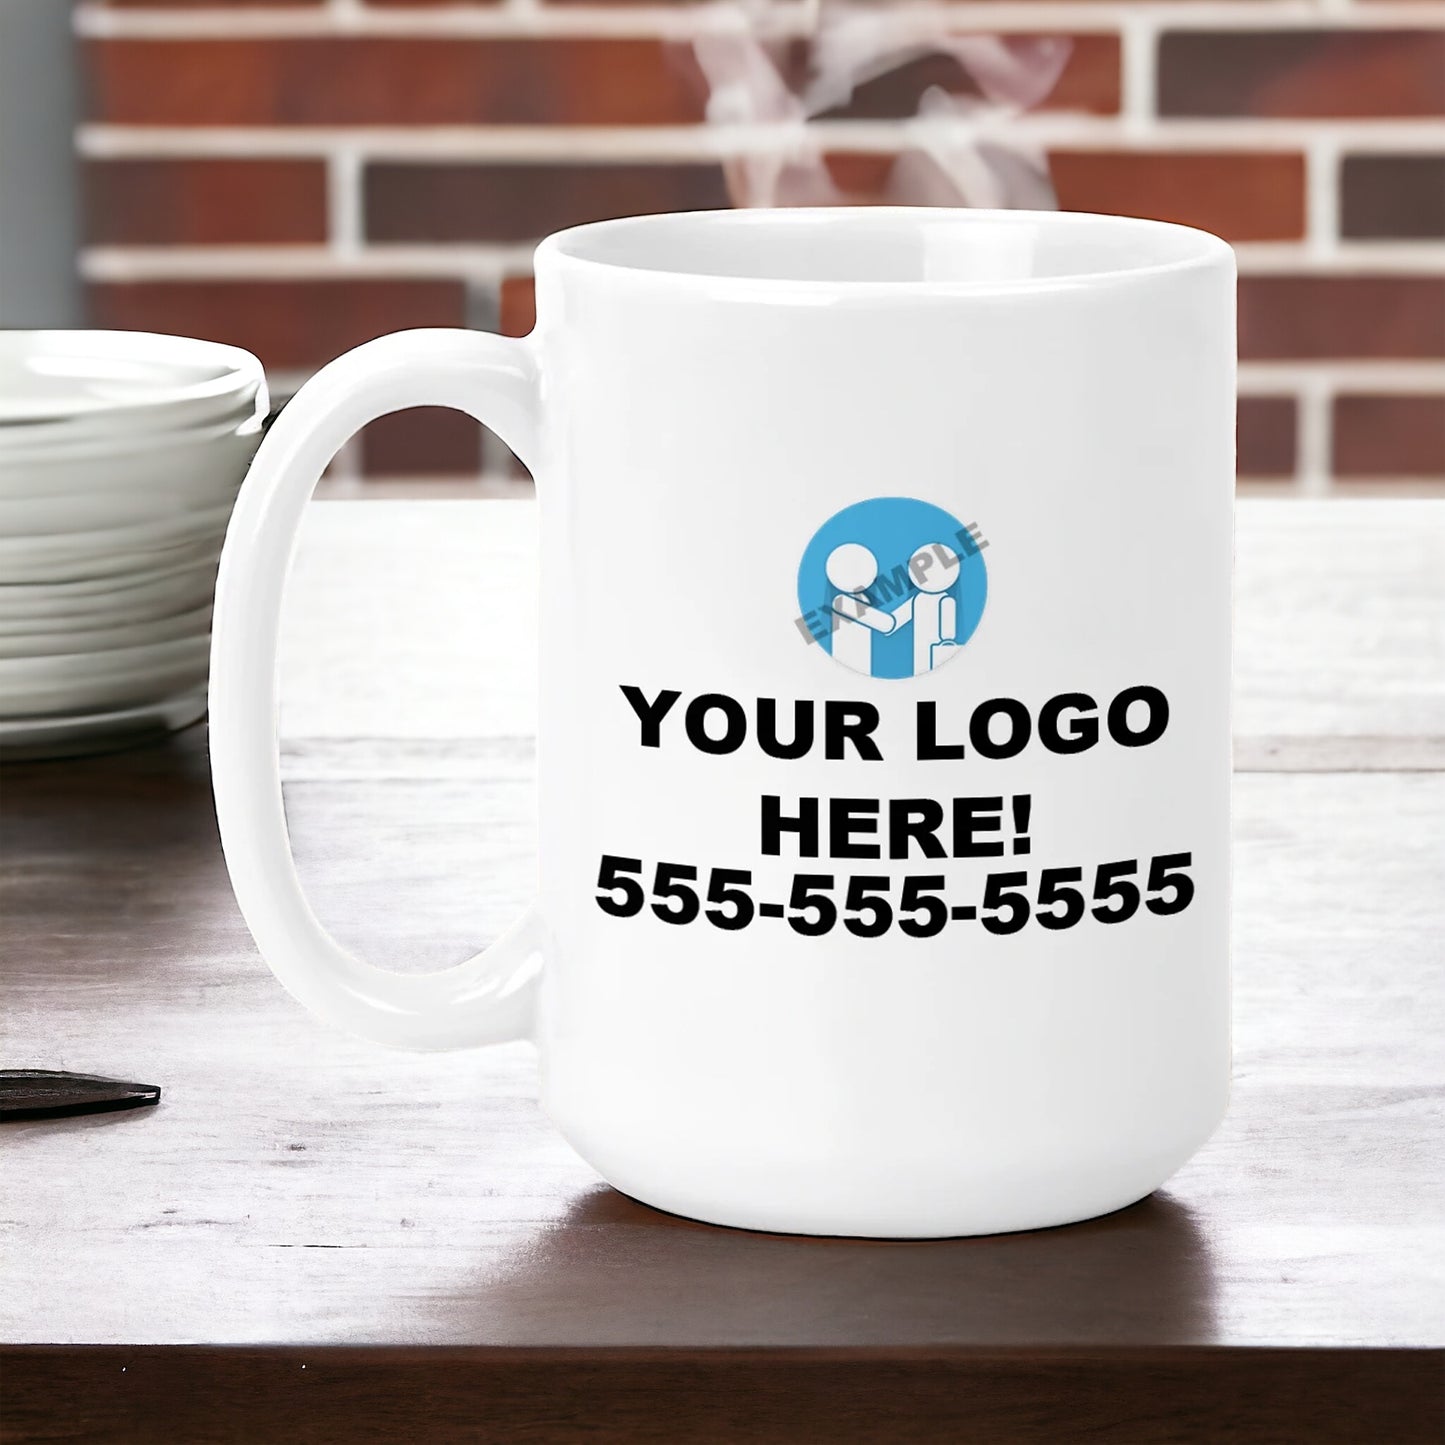 Custom Coffee Mug with Business Logo - Large 15oz Size Promotional Mug - Bulk Discounts!